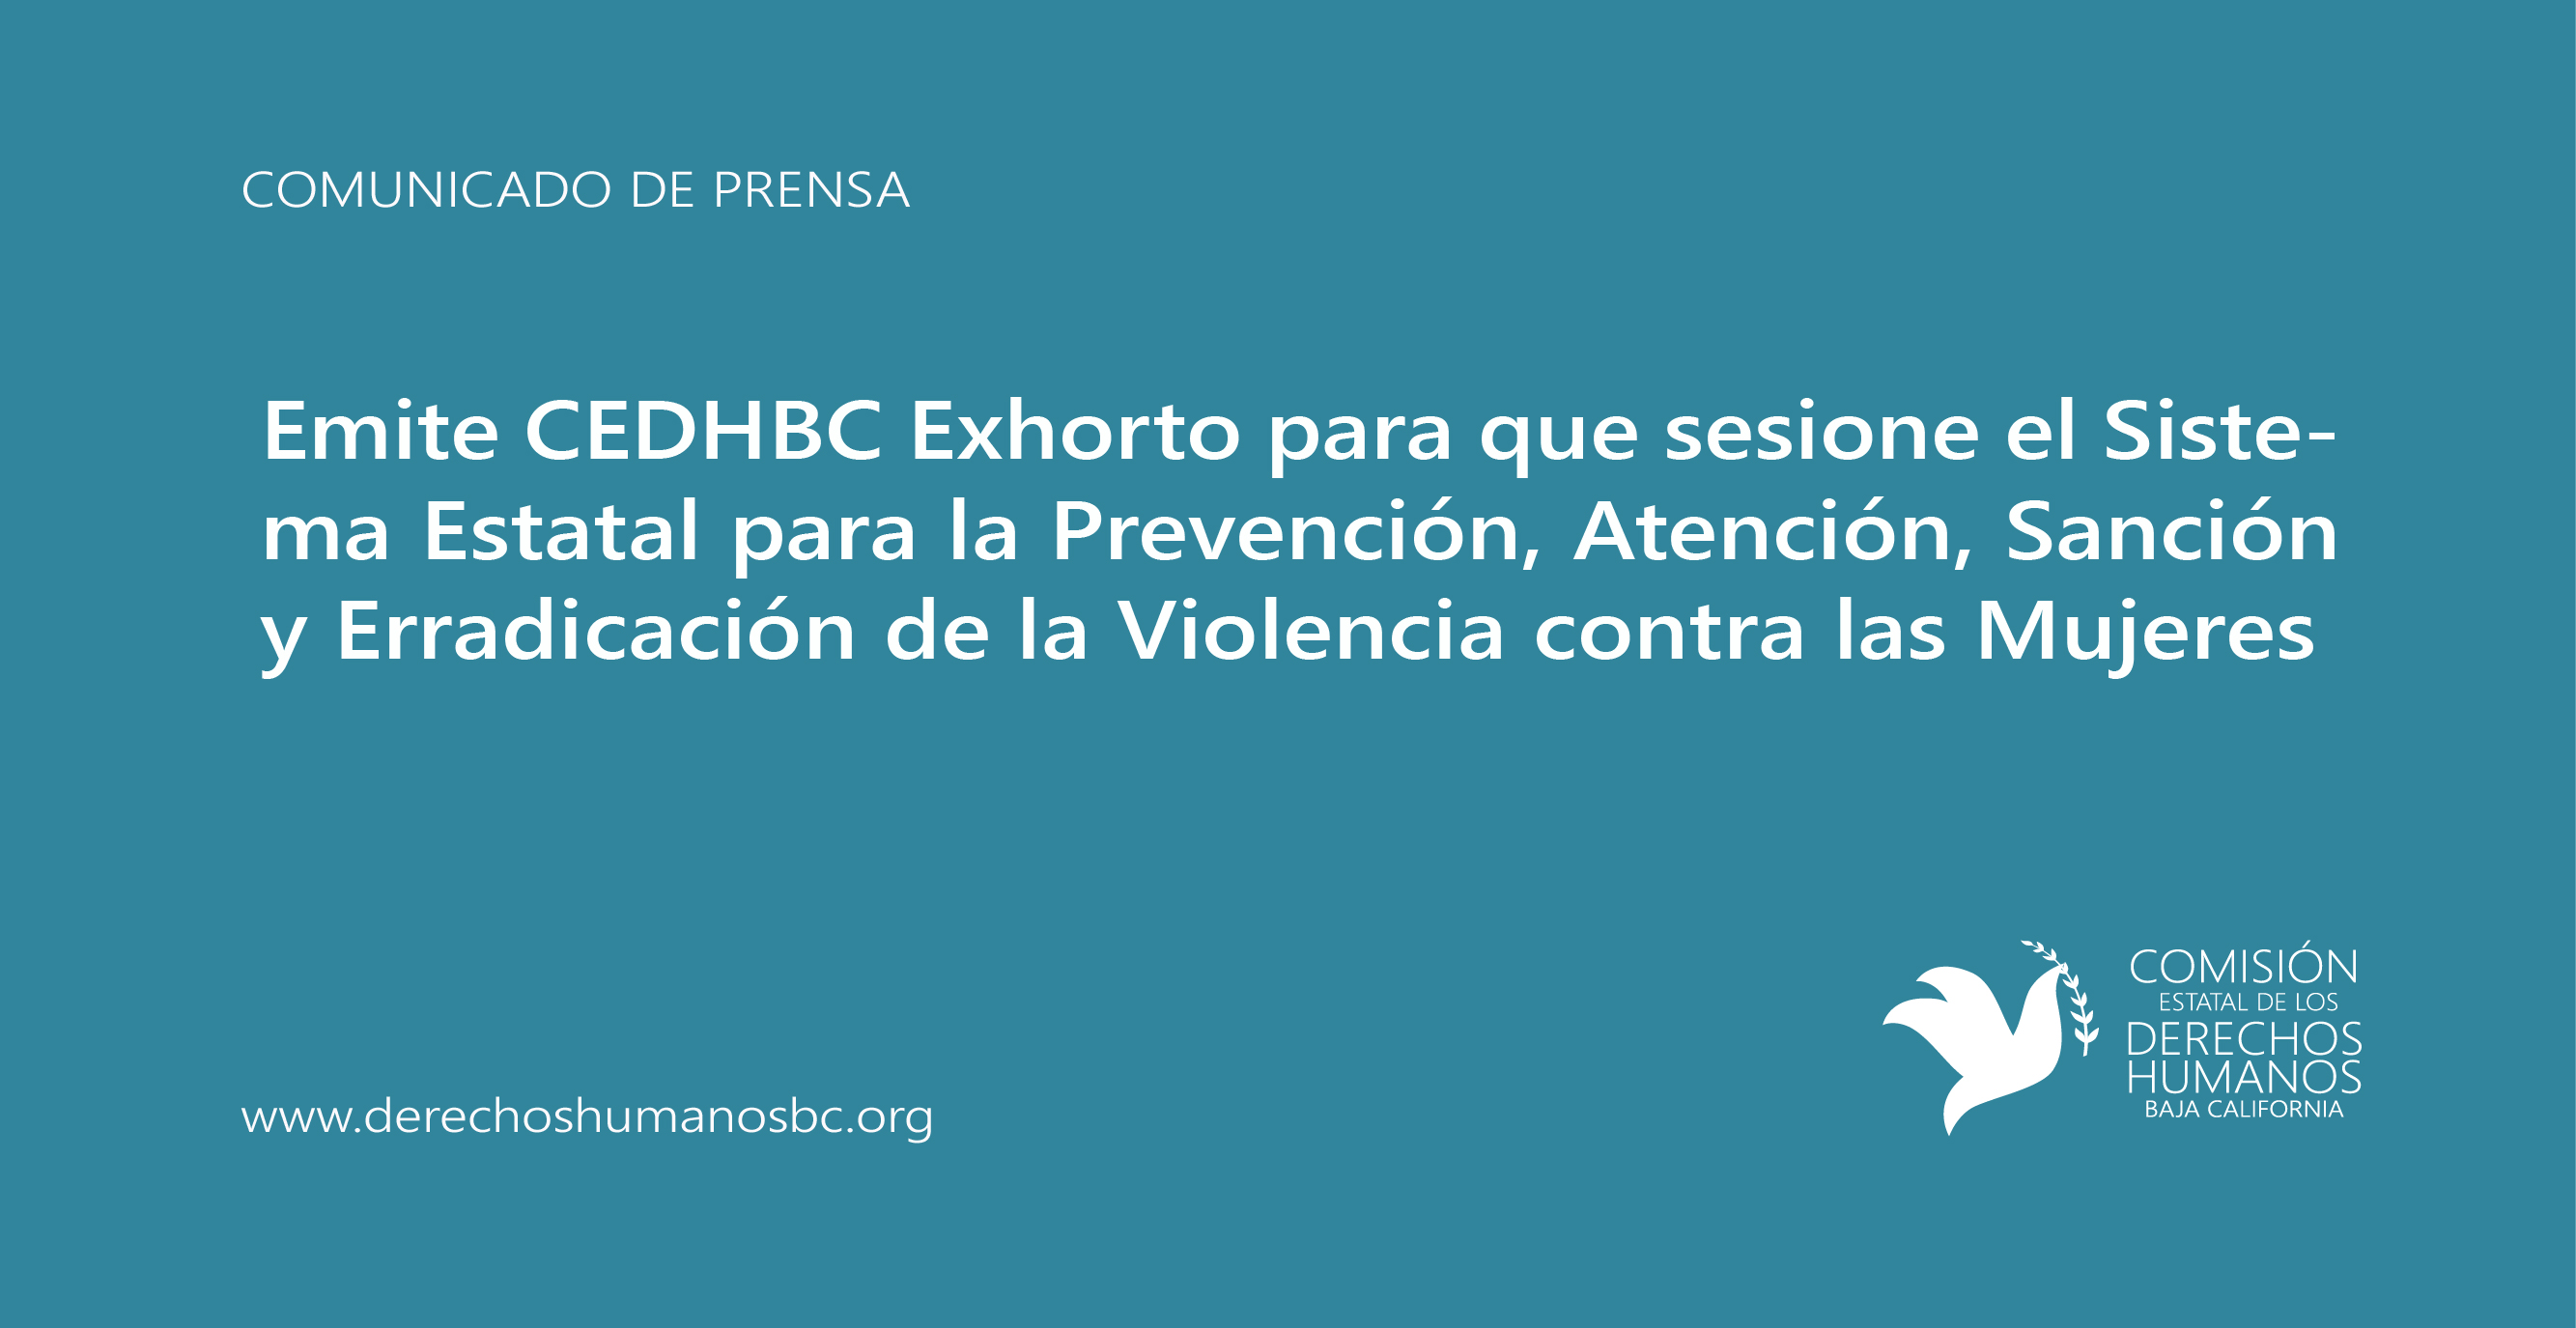 Emite CEDHBC Exhorto para que sesione el Sistema Estatal para la Prevención, Atención, Sanción y Erradicación de la Violencia contra las Mujeres